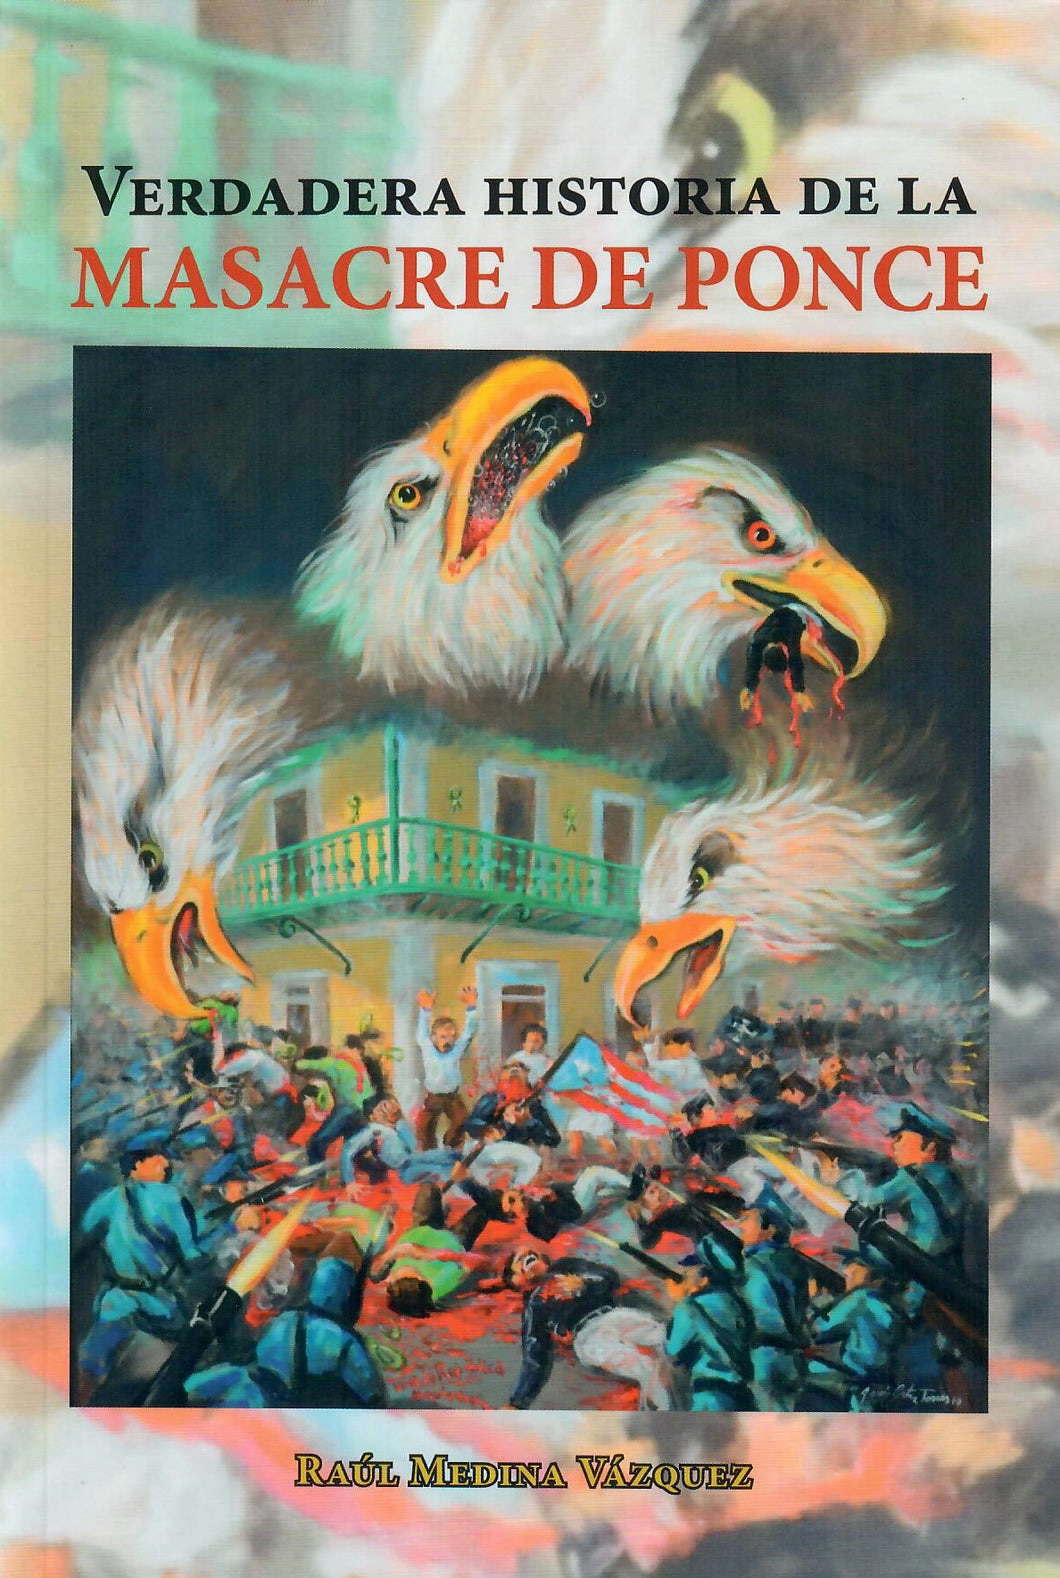 VERDADERA HISTORIA DE LA MASACRE DE PONCE - Raúl Medina Vázquez